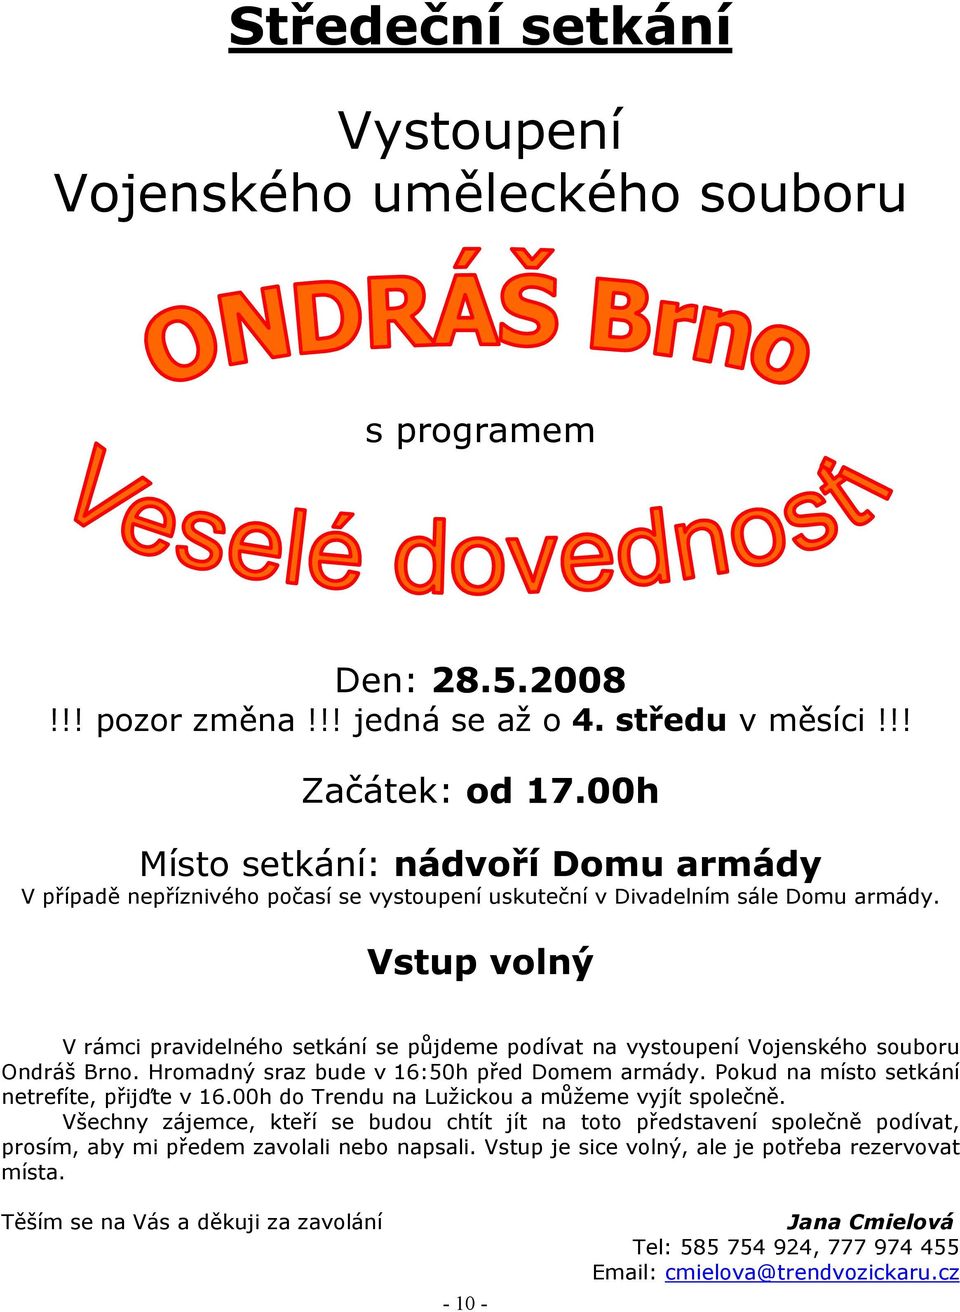 V rámci pravidelného setkání se půjdeme podívat na vystoupení Vojenského souboru Ondráš Brno. Hromadný sraz bude v 16:50h před Domem armády. Pokud na místo setkání netrefíte, přijďte v 16.